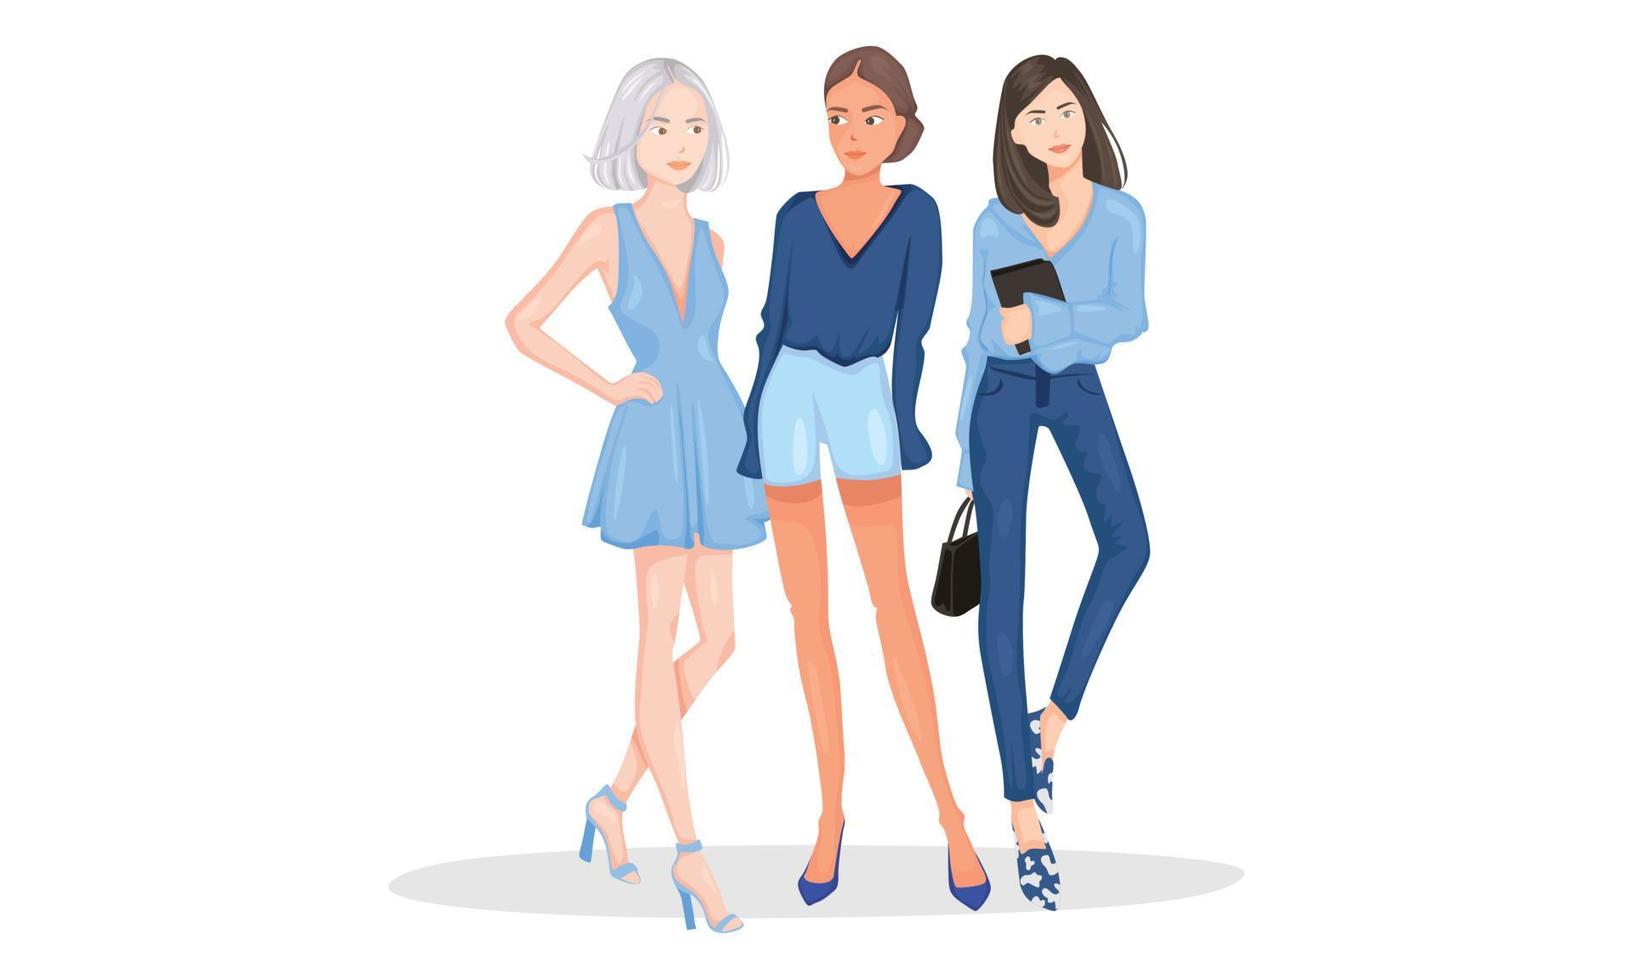 modello in posa donna sfilata di moda da donna per un abbigliamento comodo di carattere internazionale. indossano camicia blu, pantaloni e mini dress, semplicemente semplici vettore